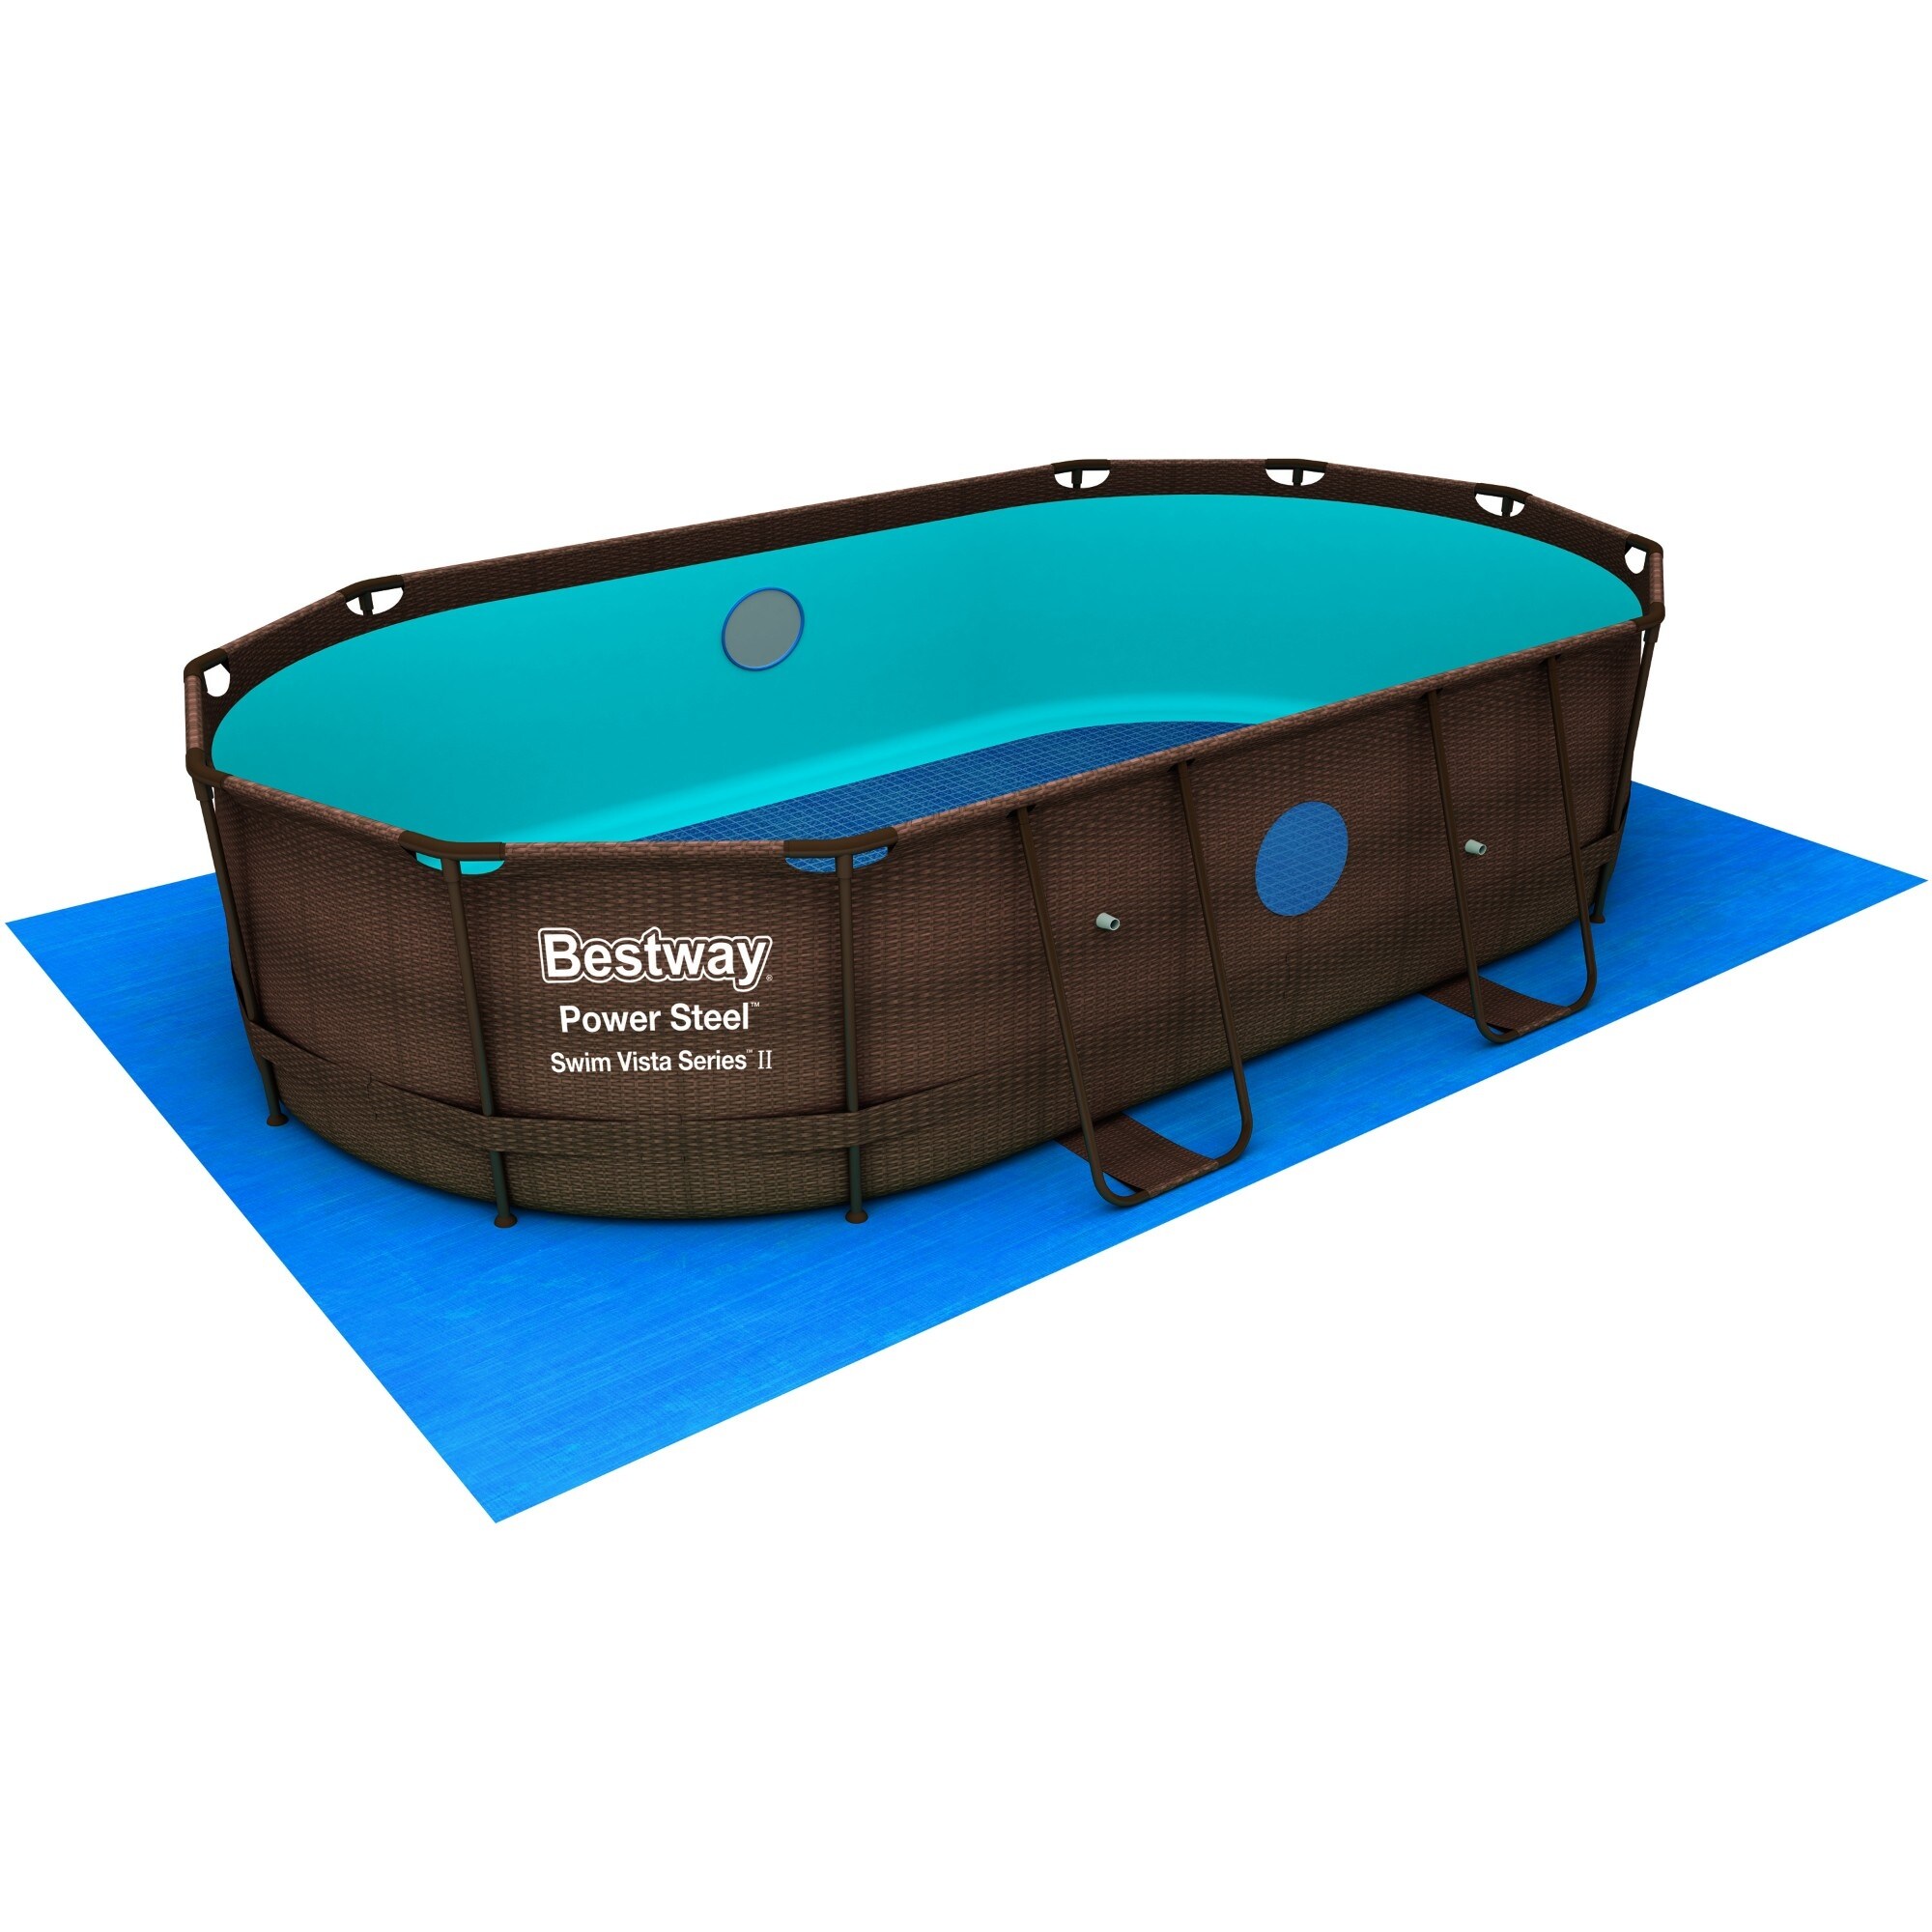 Bestway Power Steel Swim Vista Series 14 ft x 8 ft 2 in x 39.5 in Oval Pool  Set - Bed Bath & Beyond - 35796620